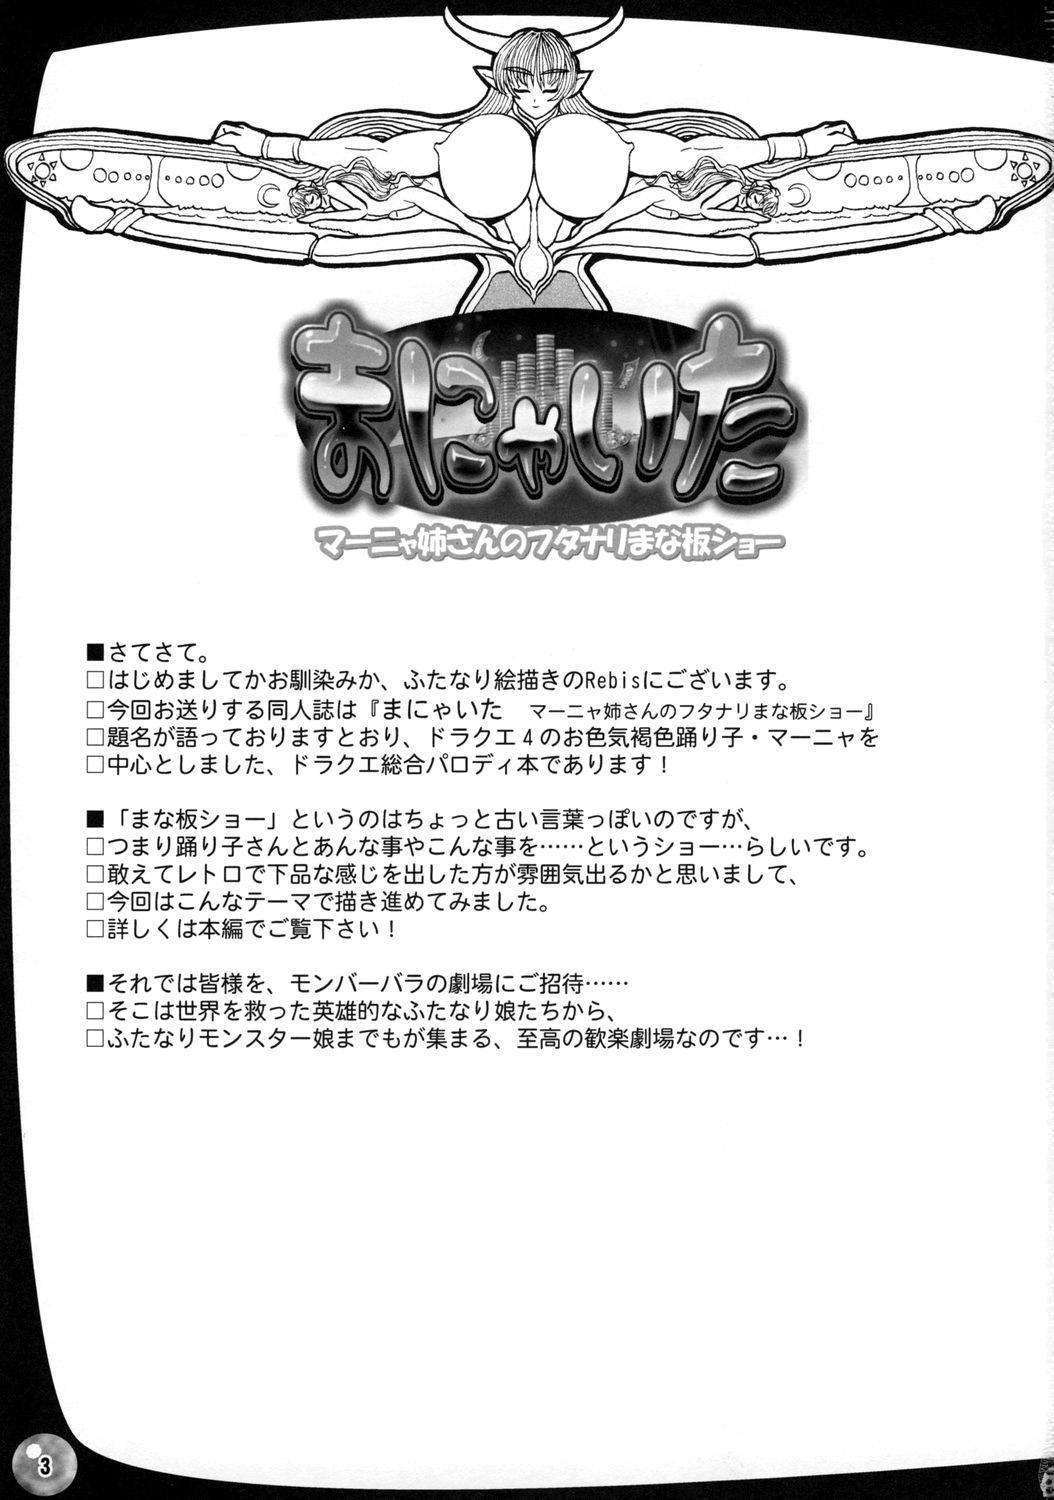 Anime (C73) [Arsenothelus (Rebis)] TGWOA Vol.22 - Manya-Ita! (Dragon Quest IV) [English] - Dragon quest iv Dragon quest Buceta - Page 2